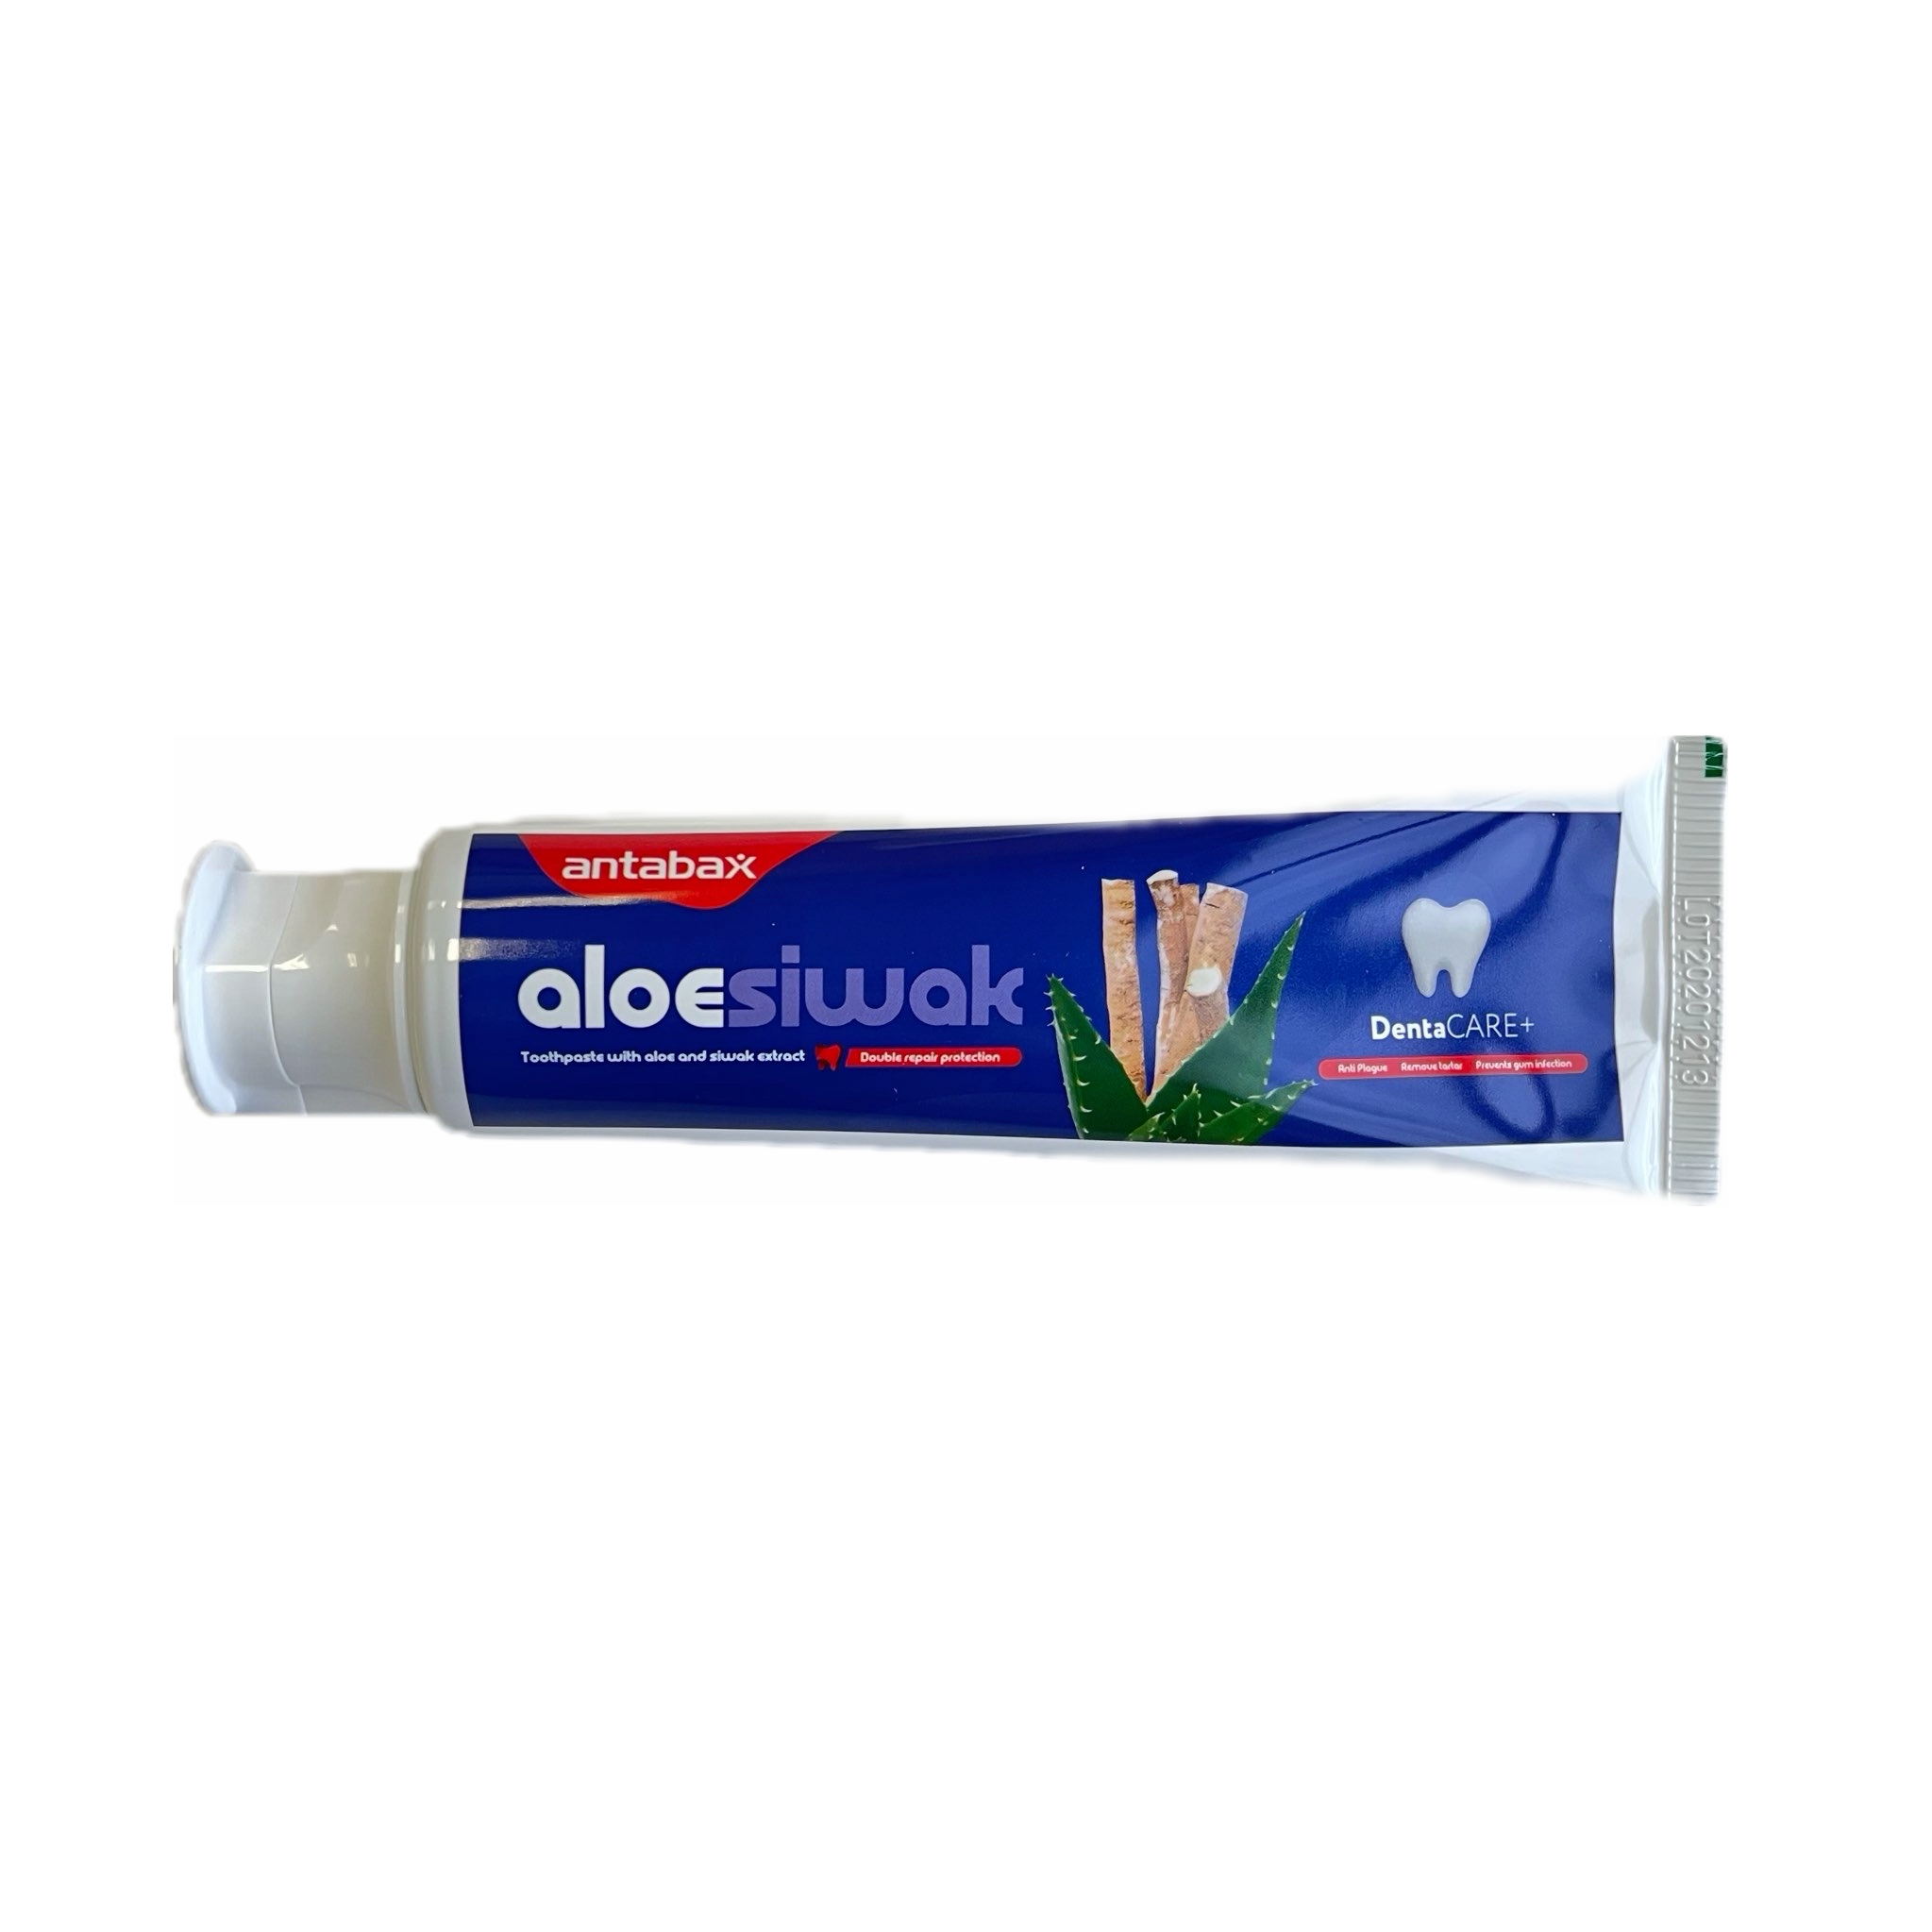 фото Зубная паста aloe siwak антибактериальная с алоэ, 100 мл antabax